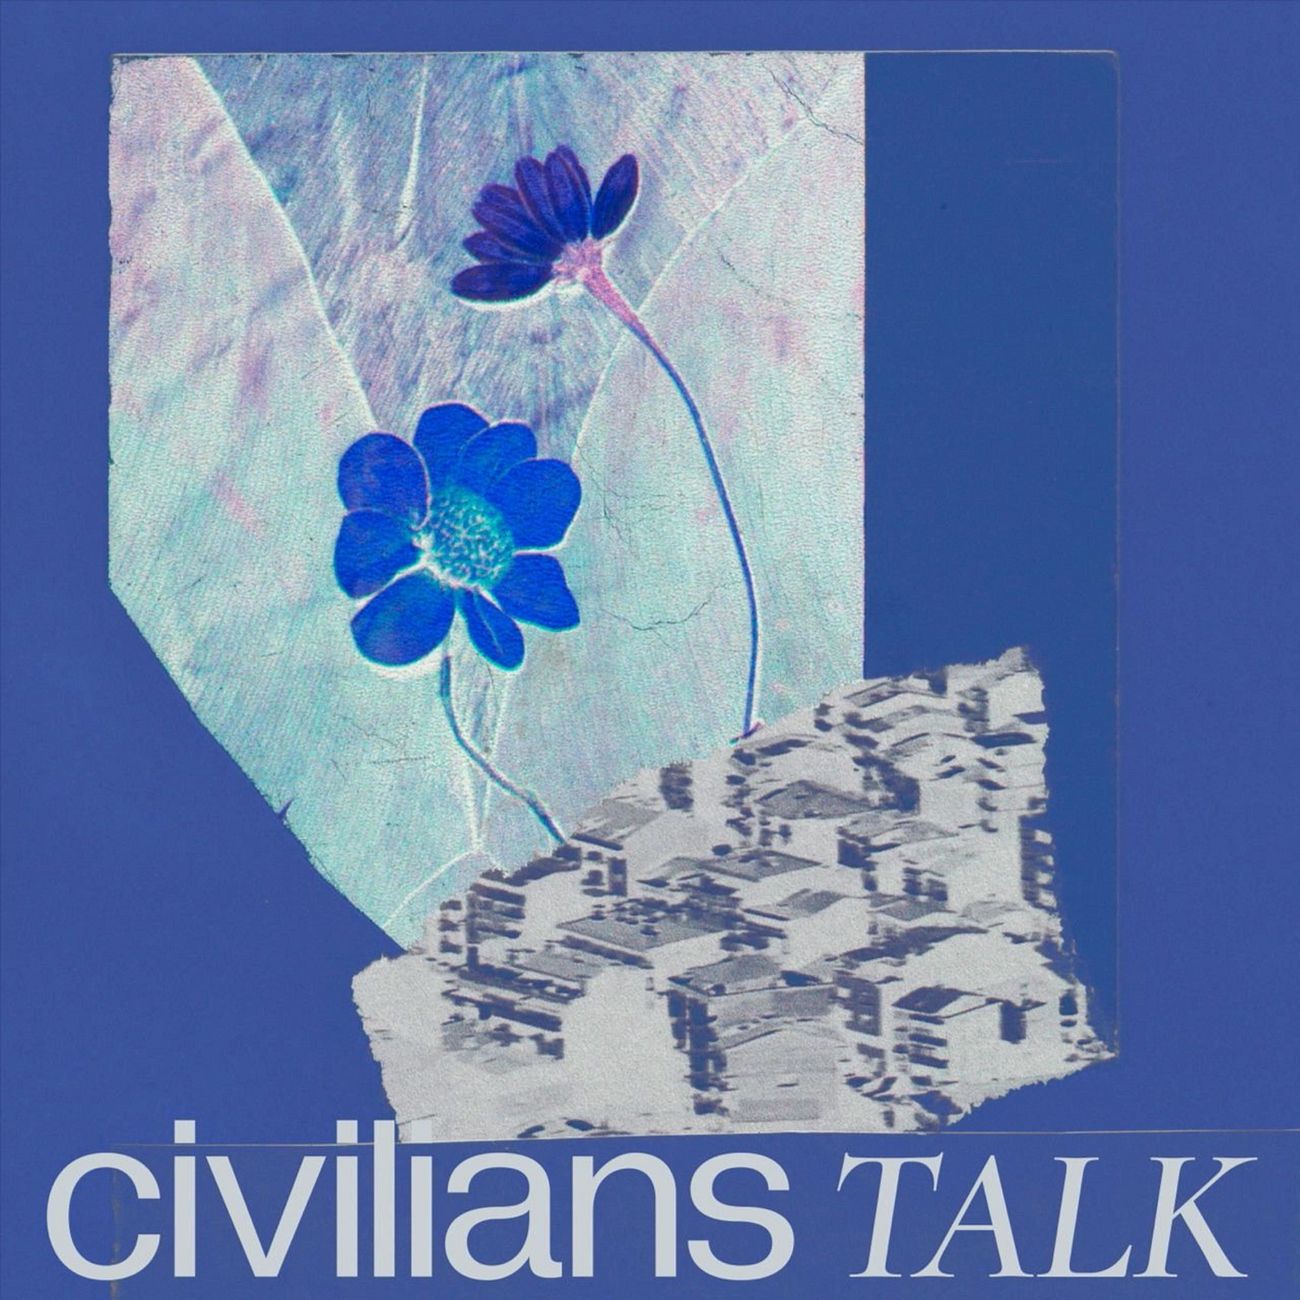 Civilians Talk